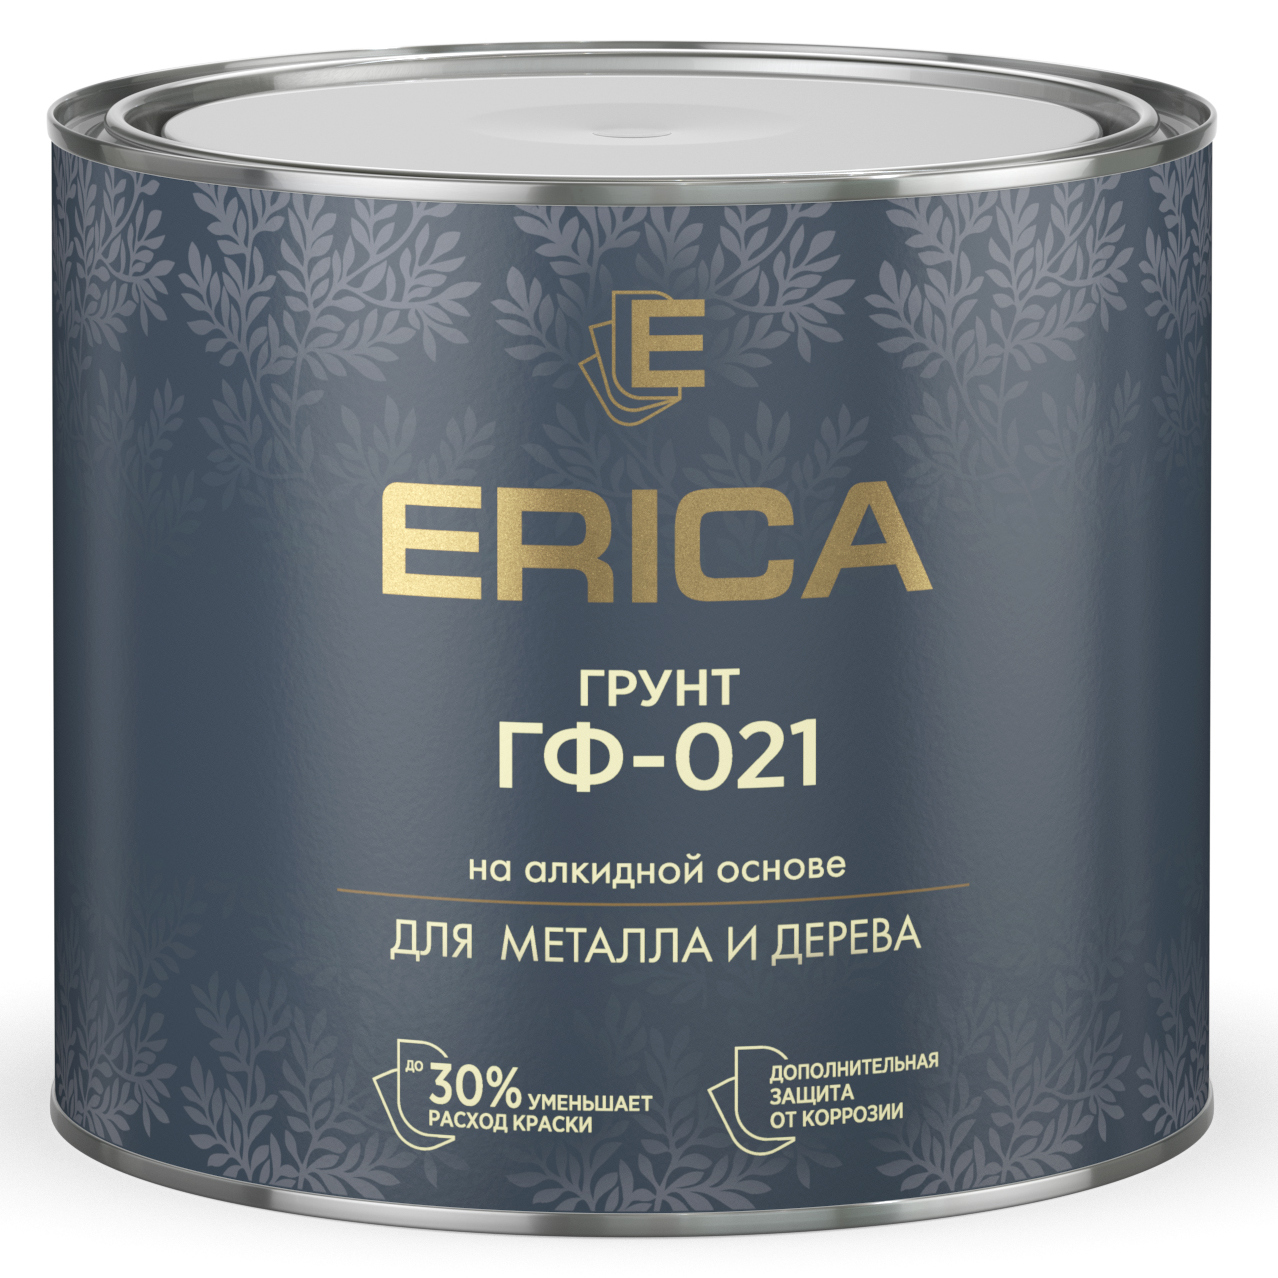 Грунт ГФ-021 СЕРЫЙ 1,8 кг Erica (6)